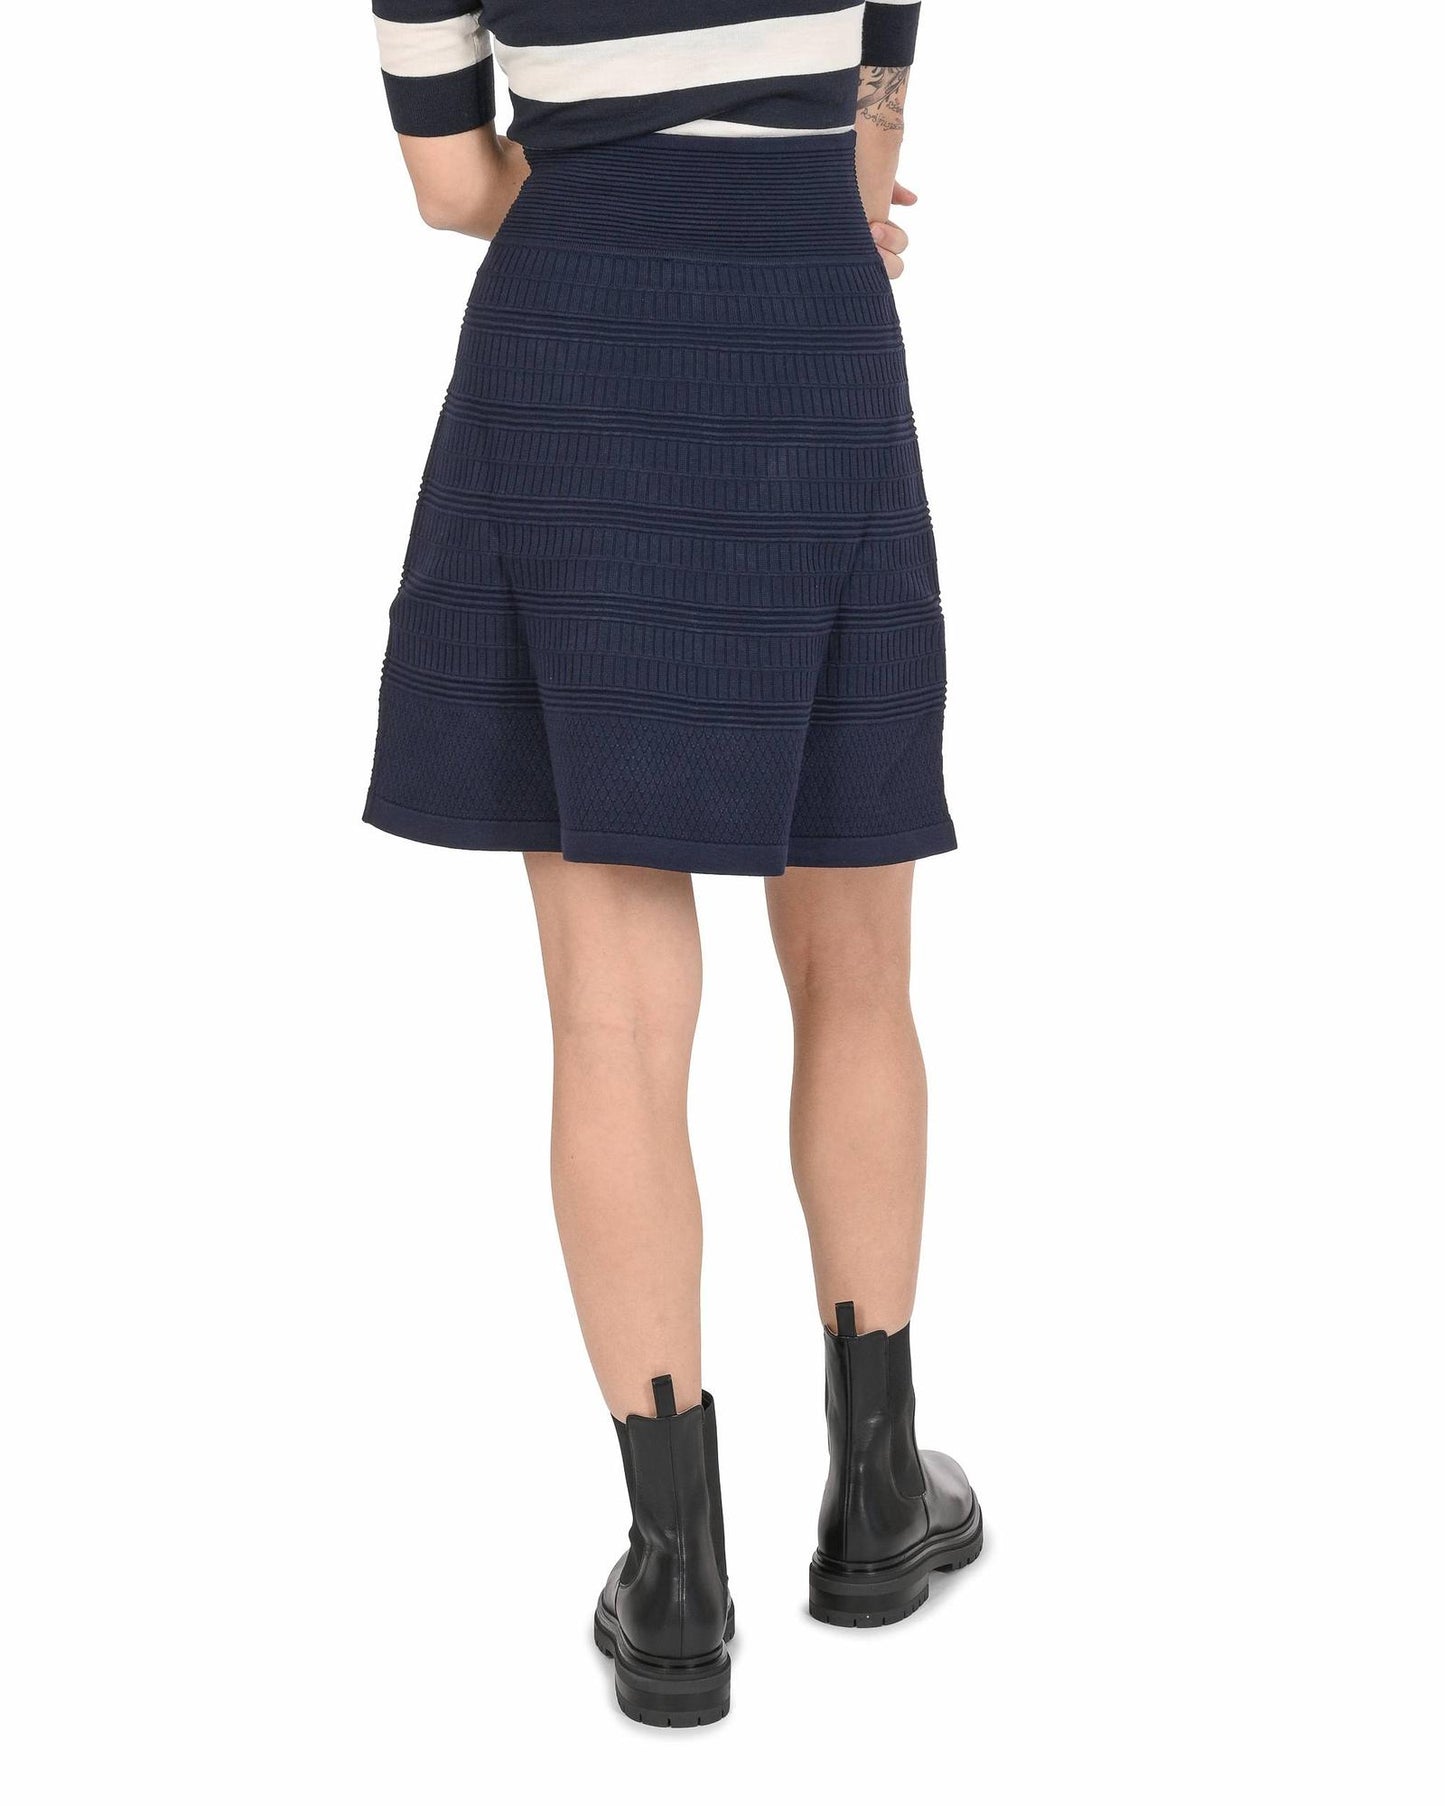 Hugo Boss Women's Viscose-Polyester Skirt in Blue - L